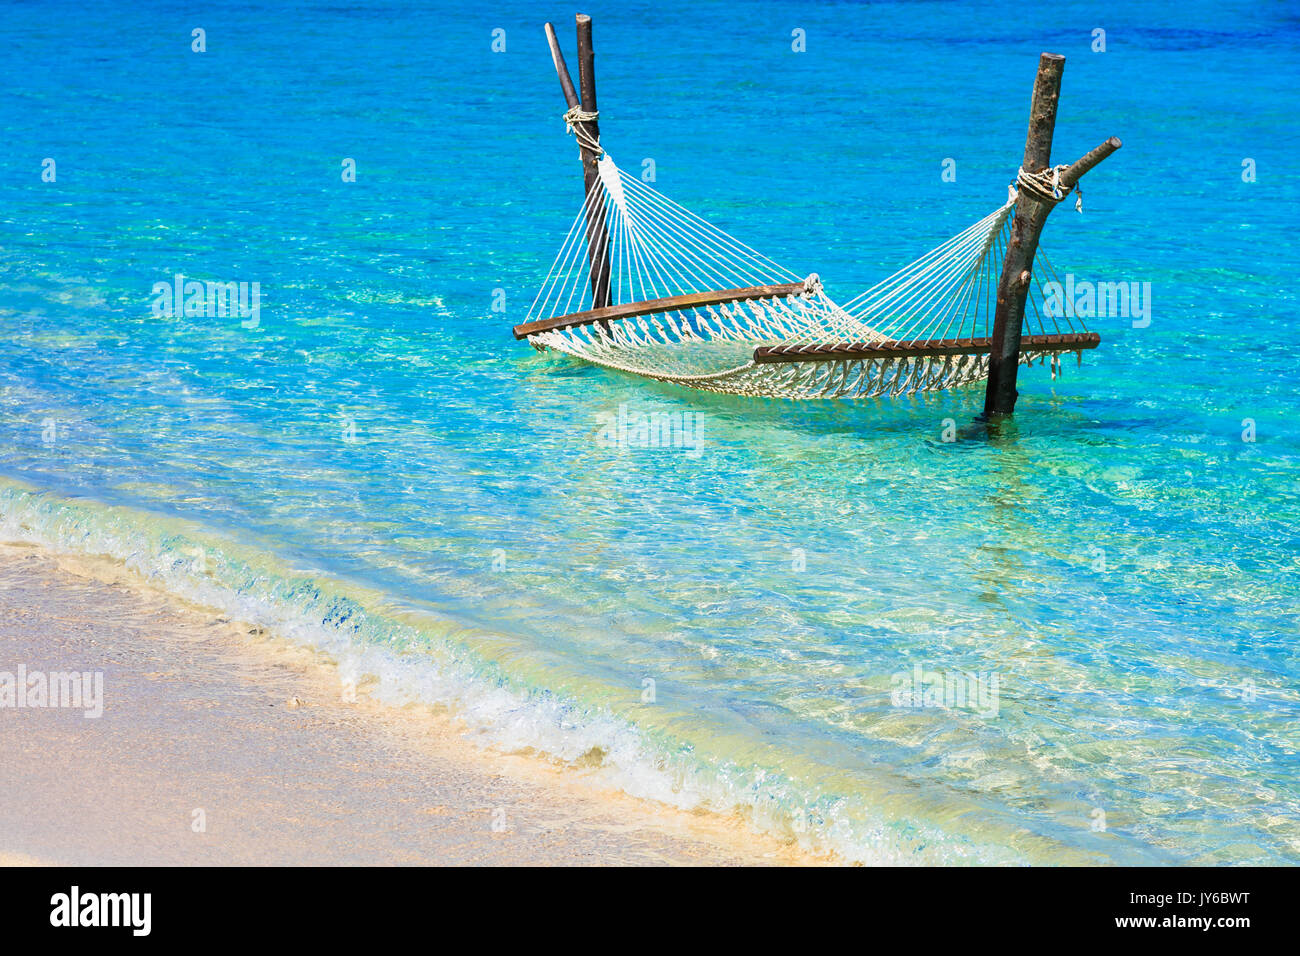 Lasy vacances tropicales. Hamac dans une mer turquoise. Banque D'Images